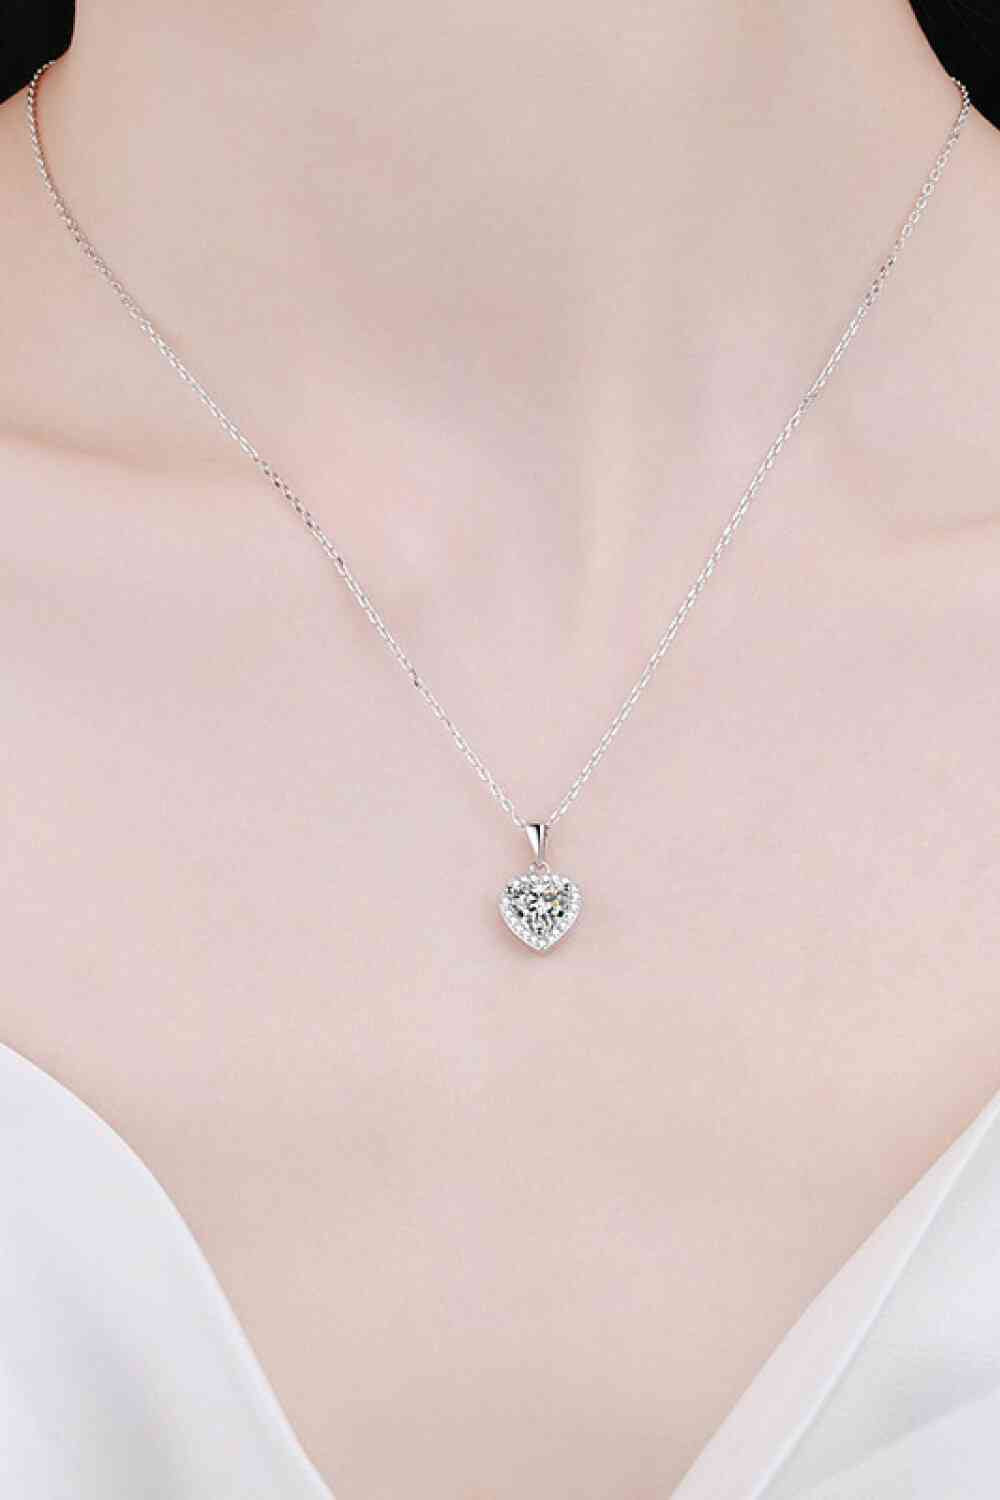 TEEK - Pretty Heart Chain Necklace JEWELRY TEEK Trend   